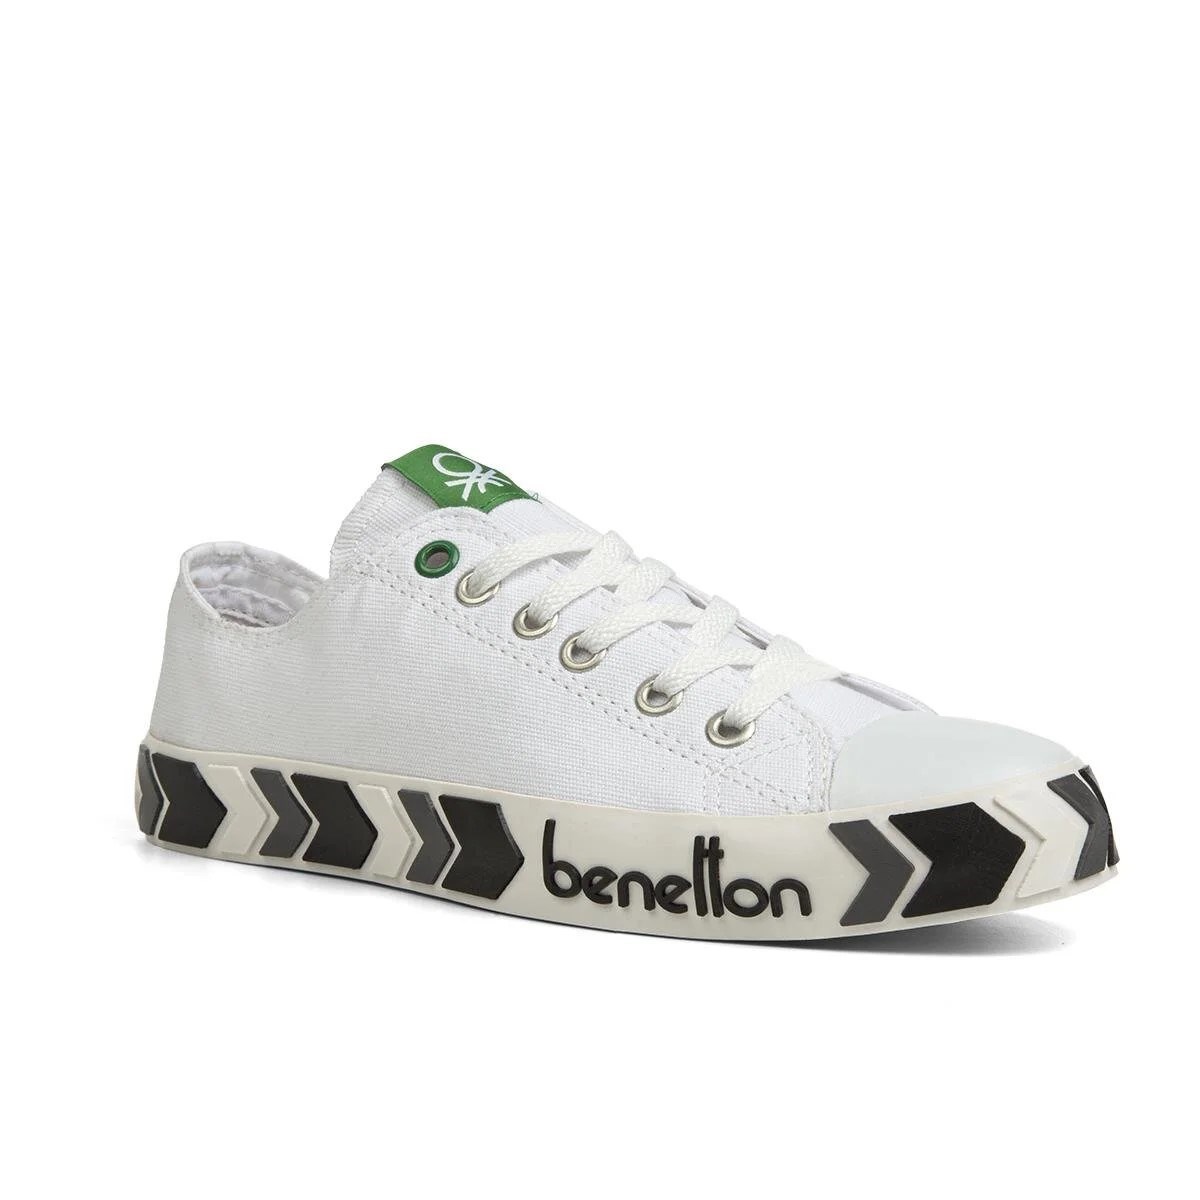 Benetton Kadın Ayakkabı BN-30620 207-Beyaz-Siyah